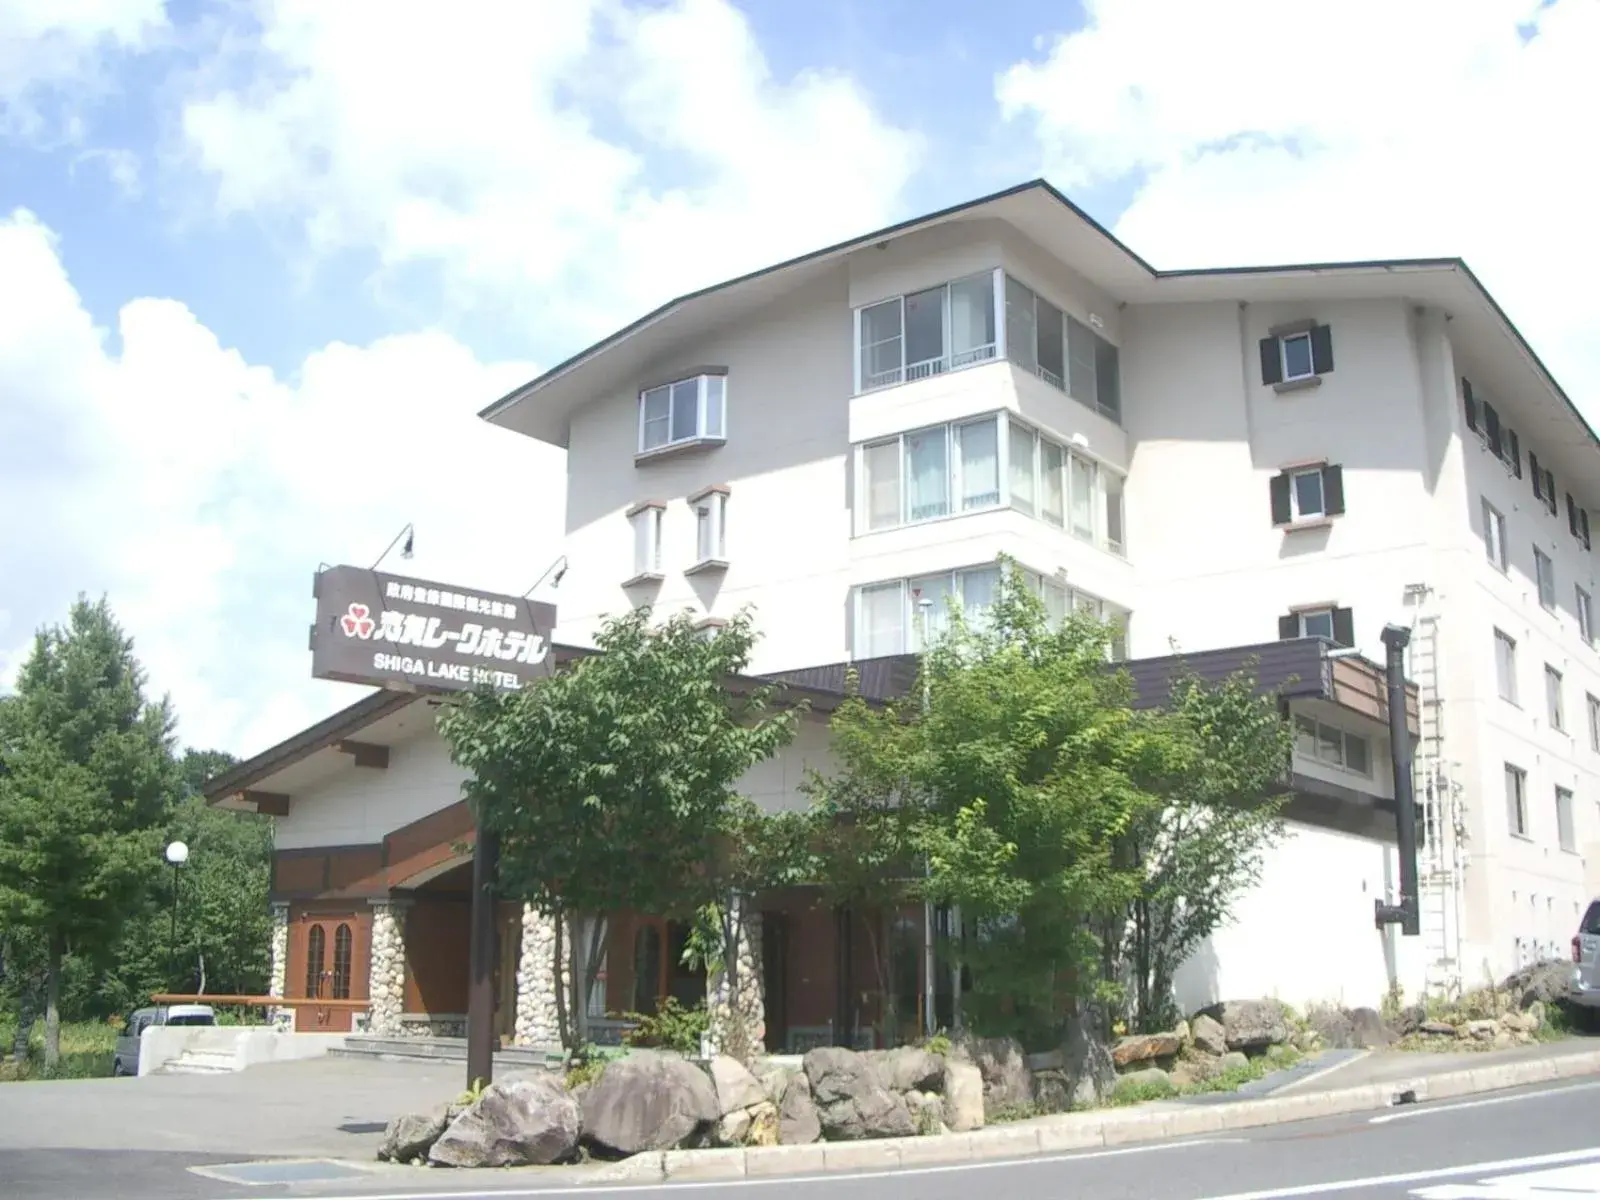 Facade/entrance, Property Building in Shiga Lake Hotel